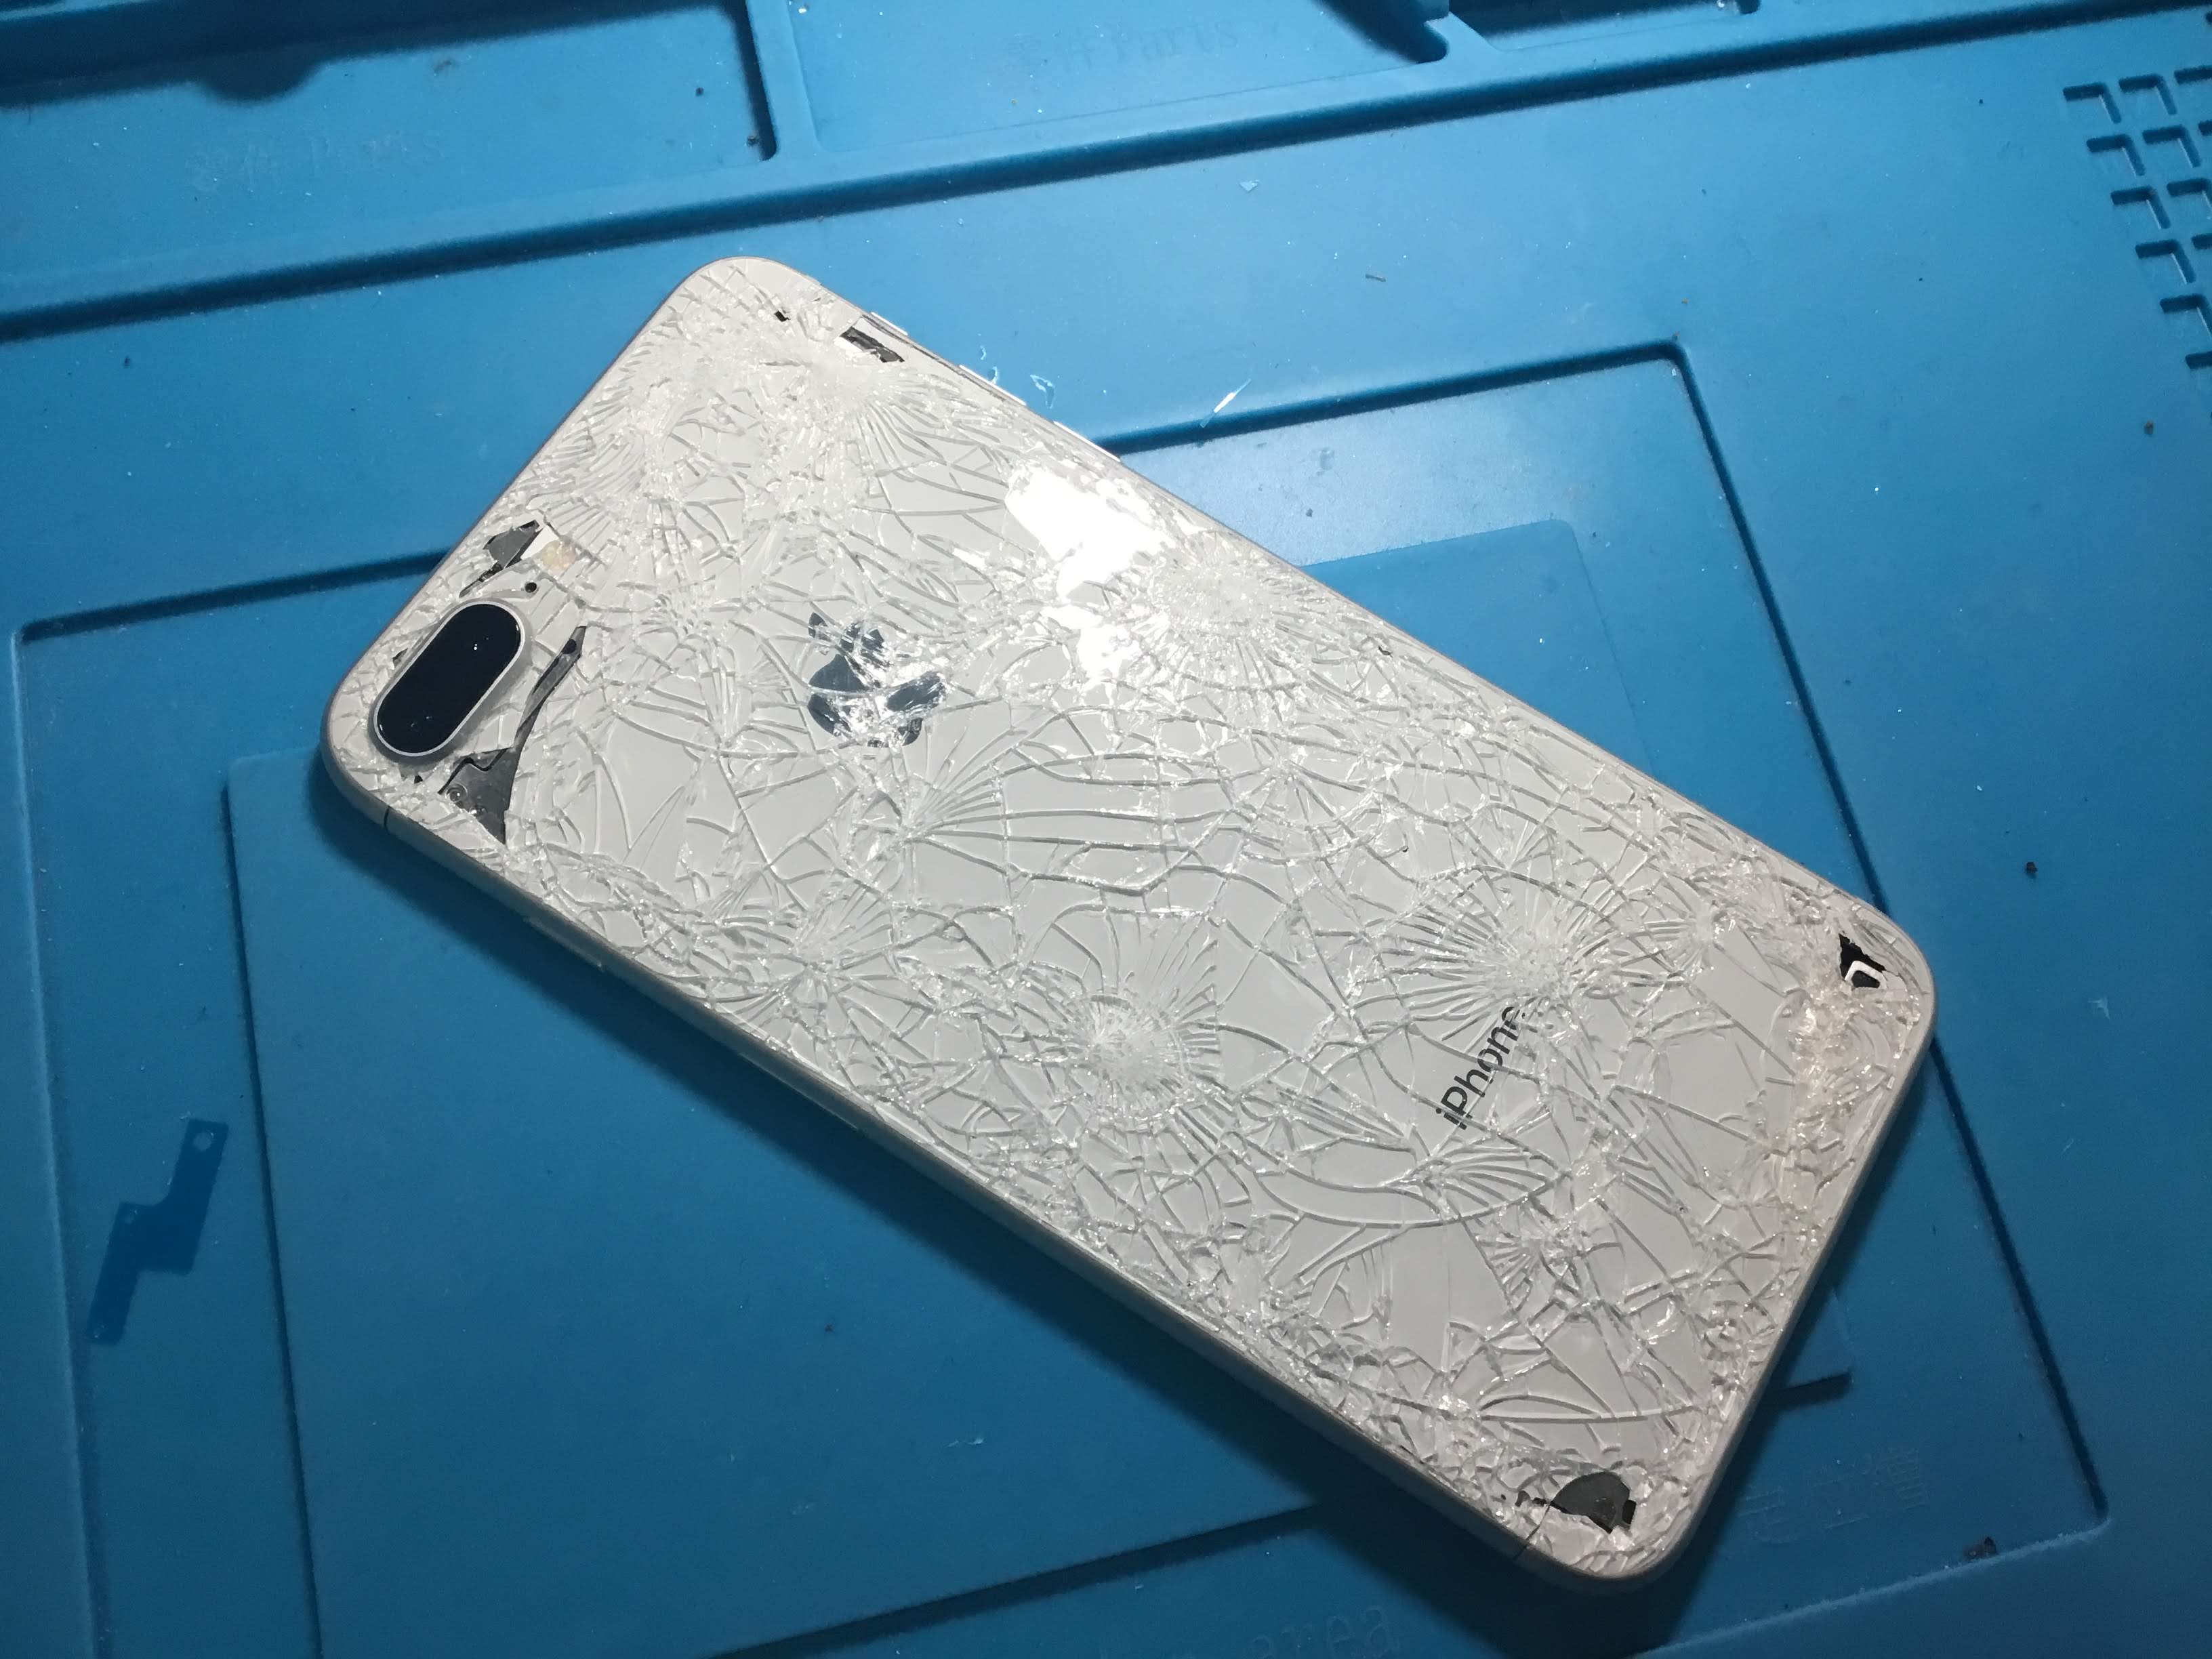 Iphonexの画面も背面も保護するにはガラスコーティングがオススメ 秋葉原店 Iphone修理ジャパン